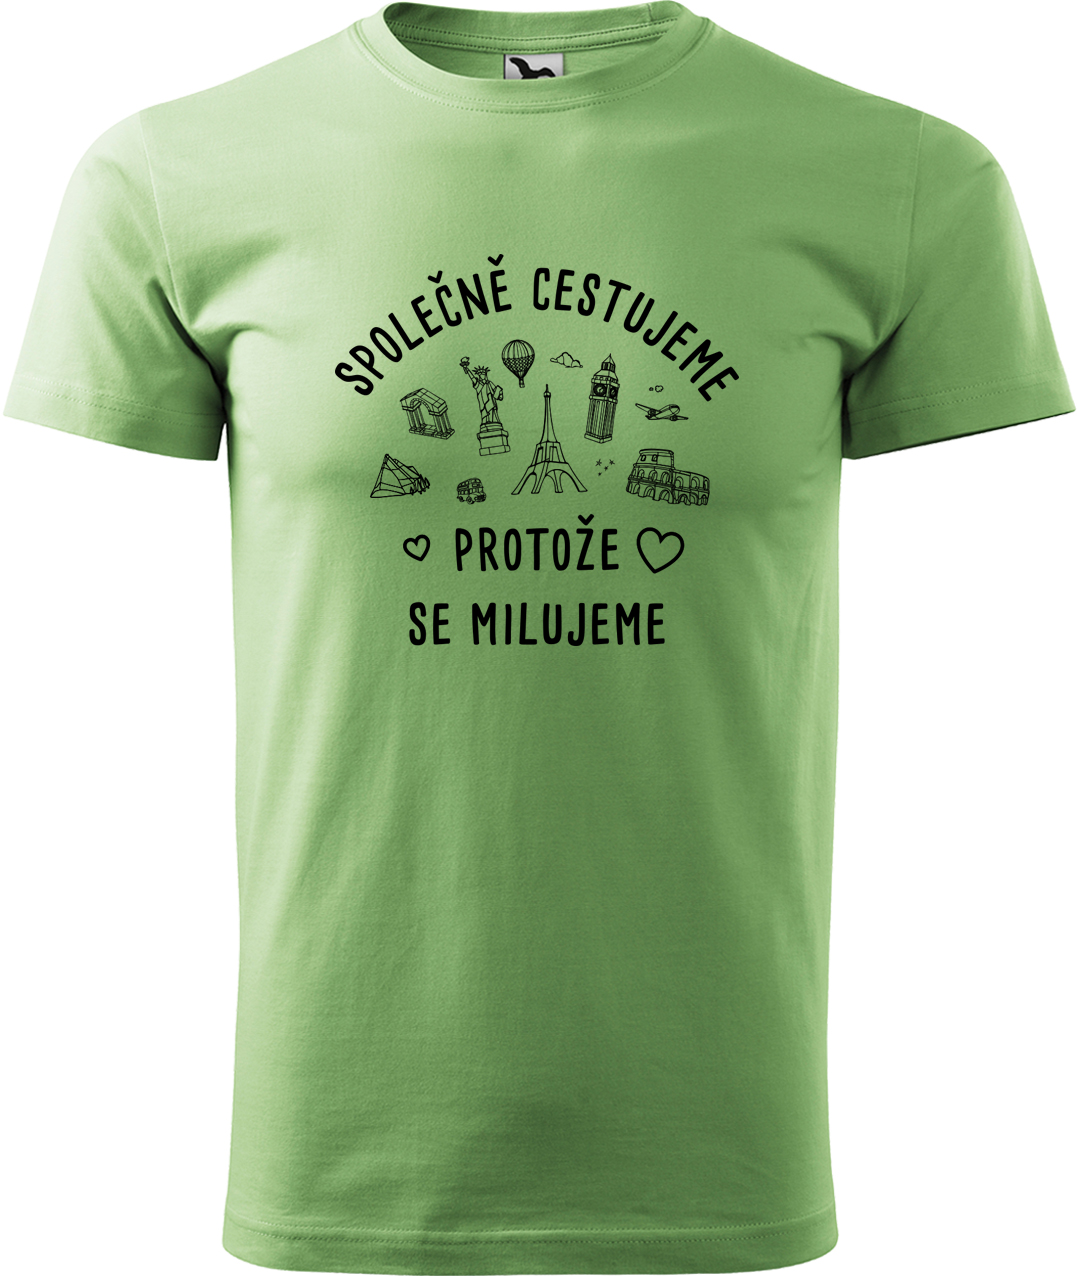 Pánské cestovatelské tričko - Společně cestujeme protože se milujeme Velikost: 4XL, Barva: Trávově zelená (39), Střih: pánský